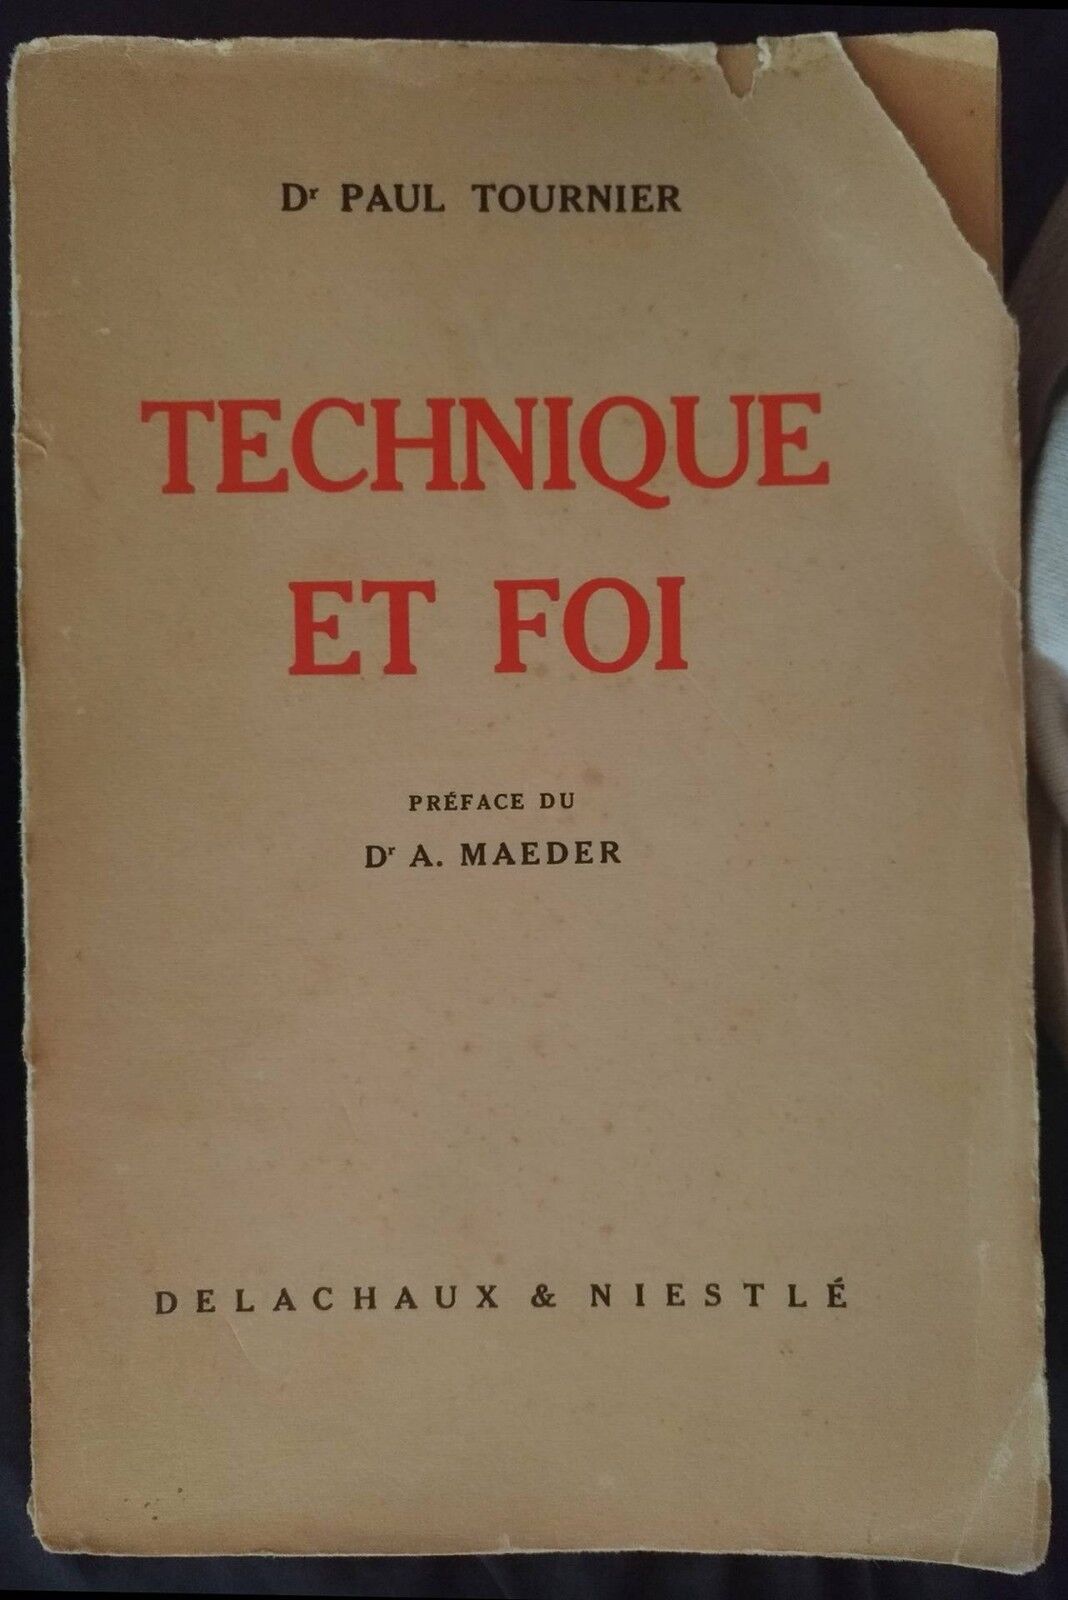 Technique et Foi -Dr Paul Tournier,1946, Delachaux & Niestl?- S